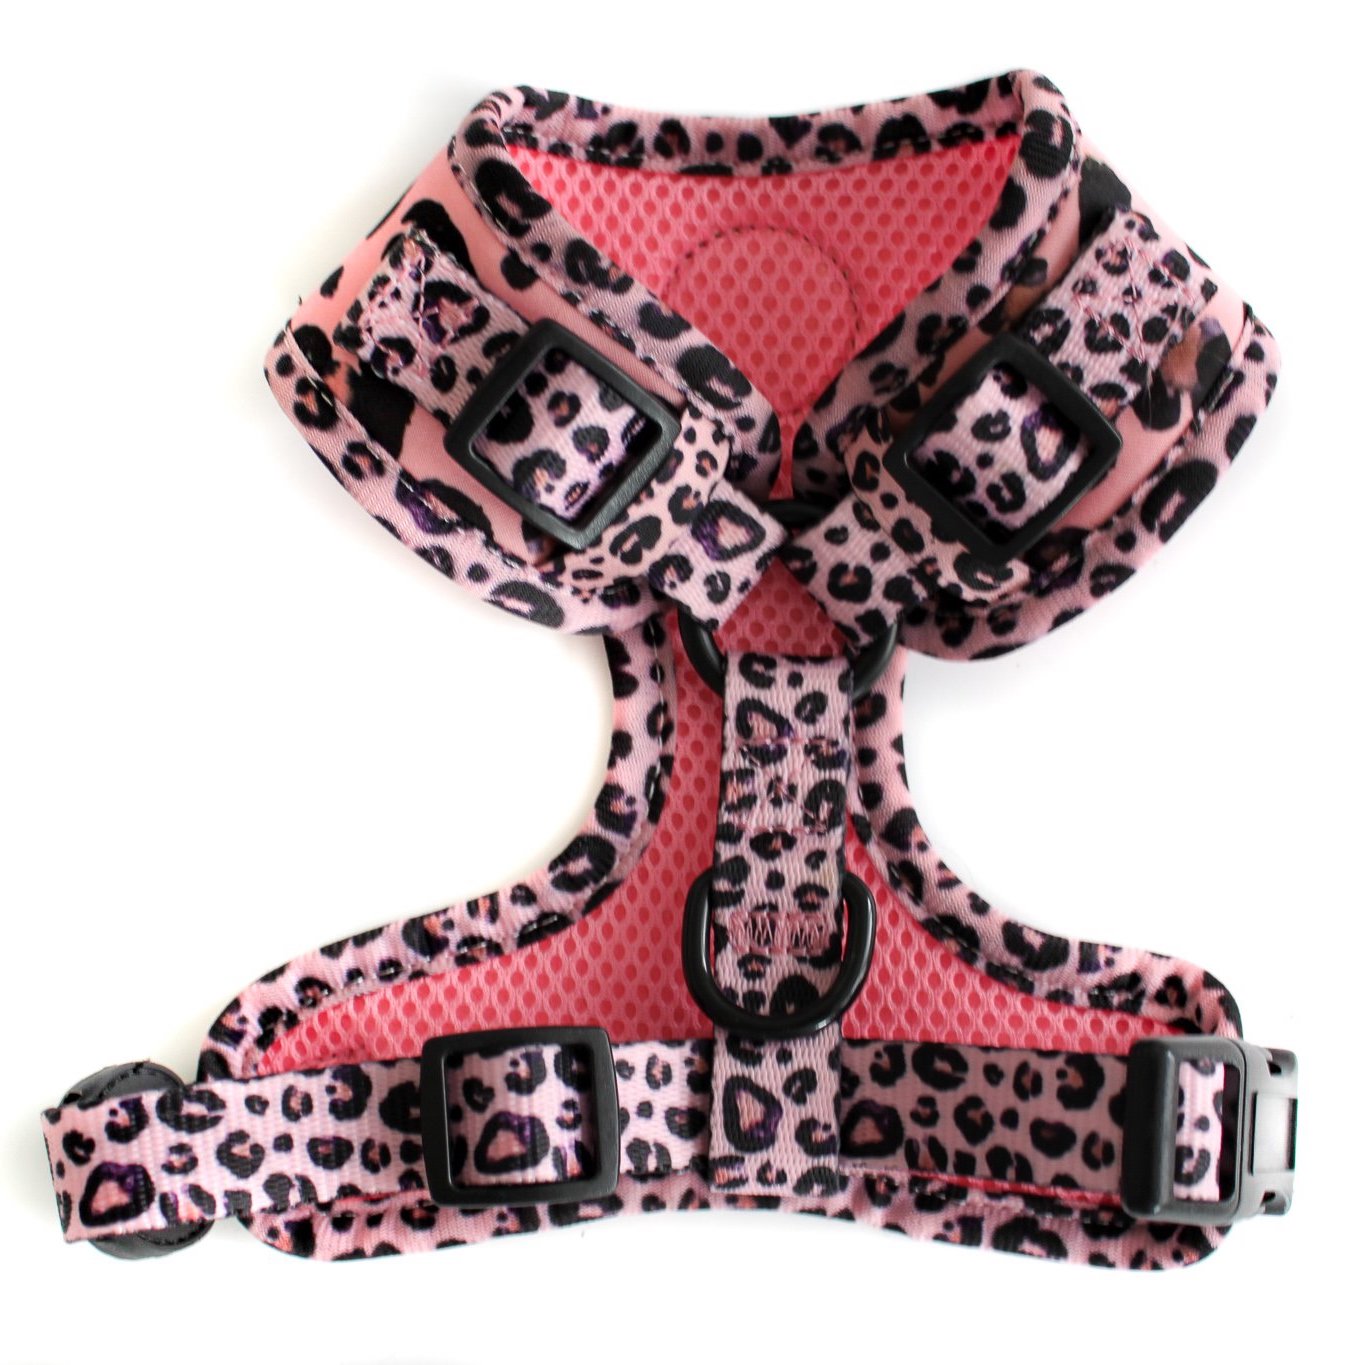 PABLO & CO - Pink Leopard Adjustable Dog Harness